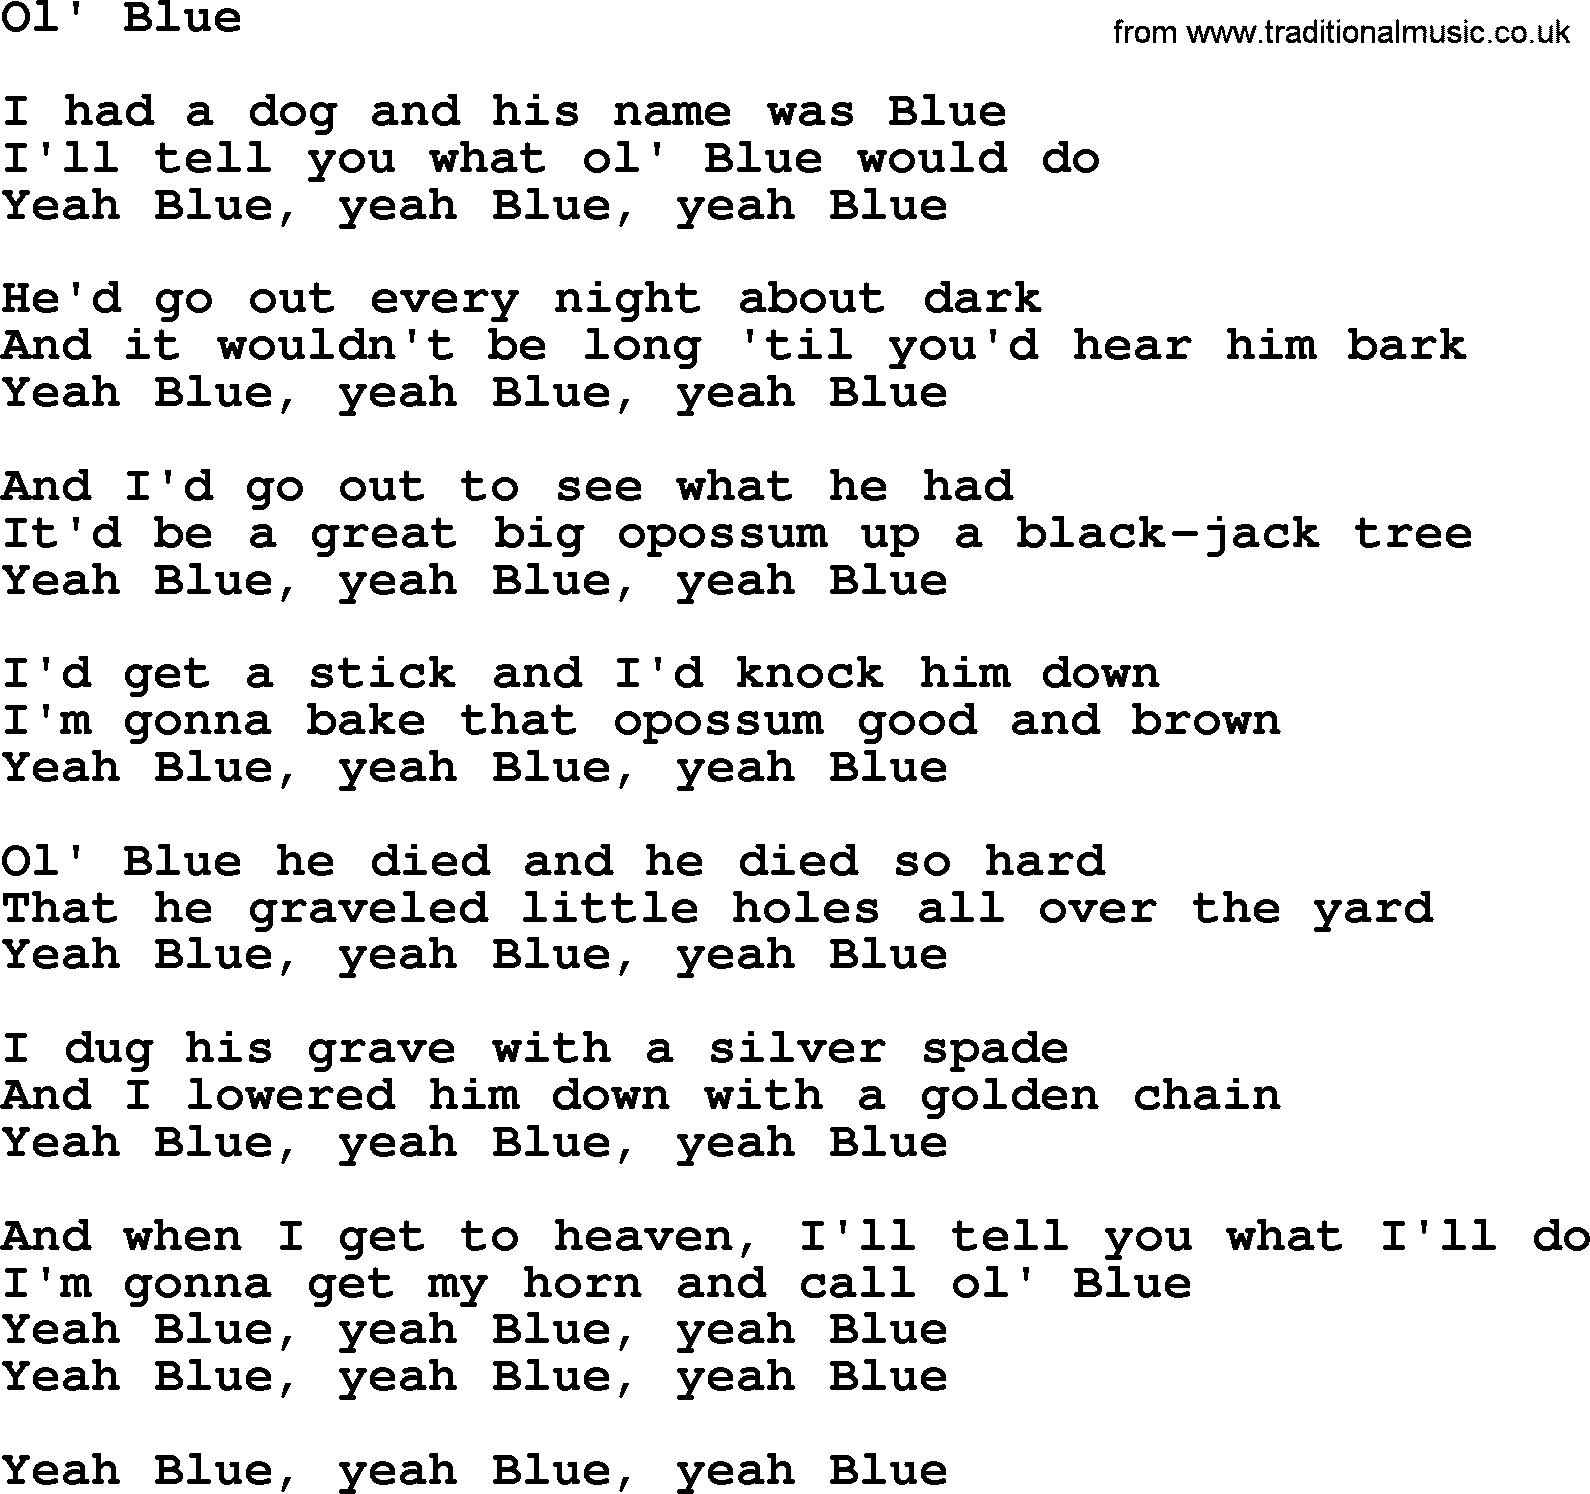 Willie Nelson song: Ol' Blue lyrics